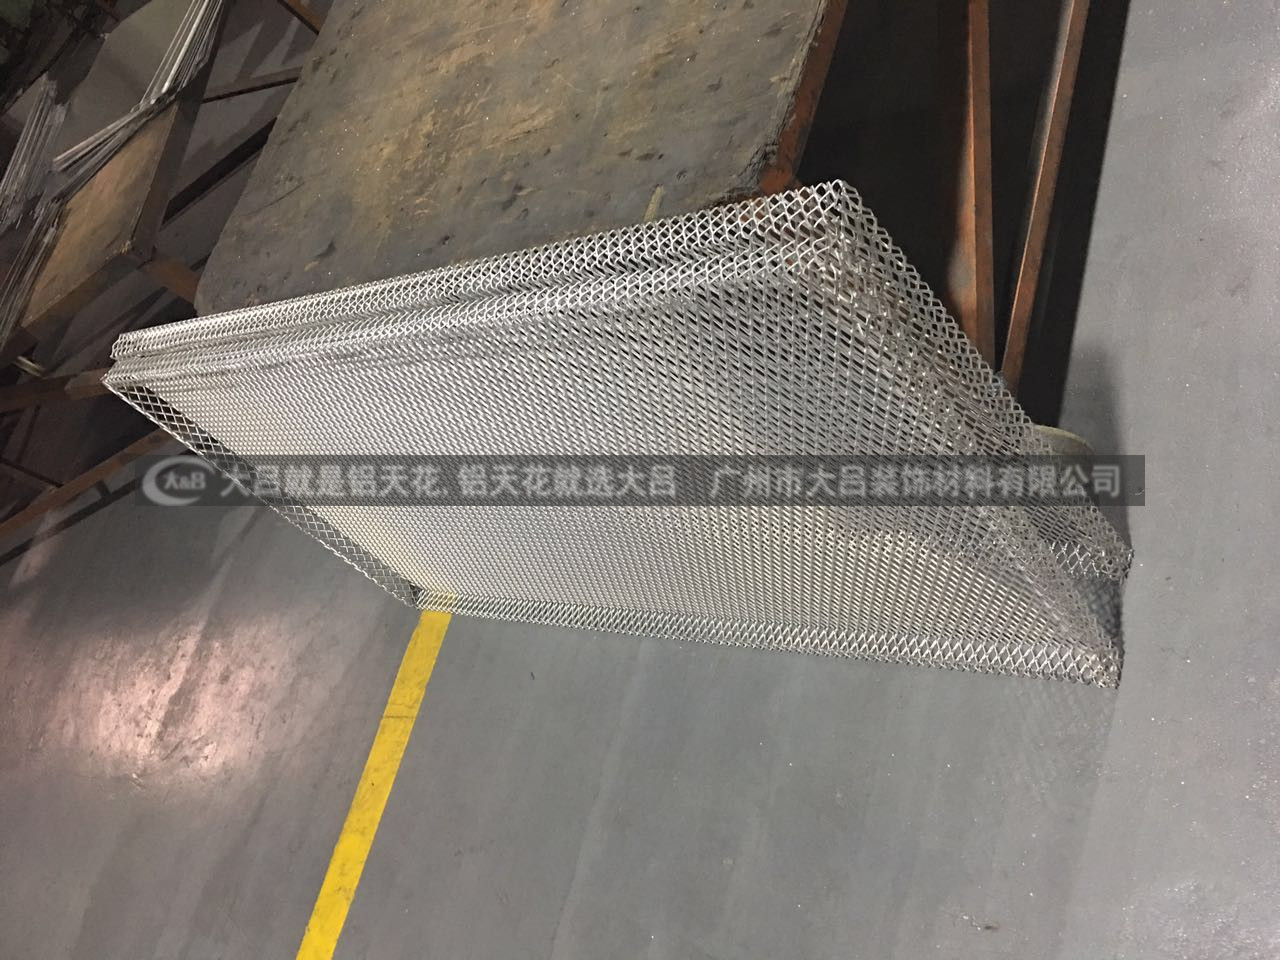 菱形孔铝合金拉网按需定制各种样式菱形孔铝合金拉网 铝拉伸网板 铝扩张网板